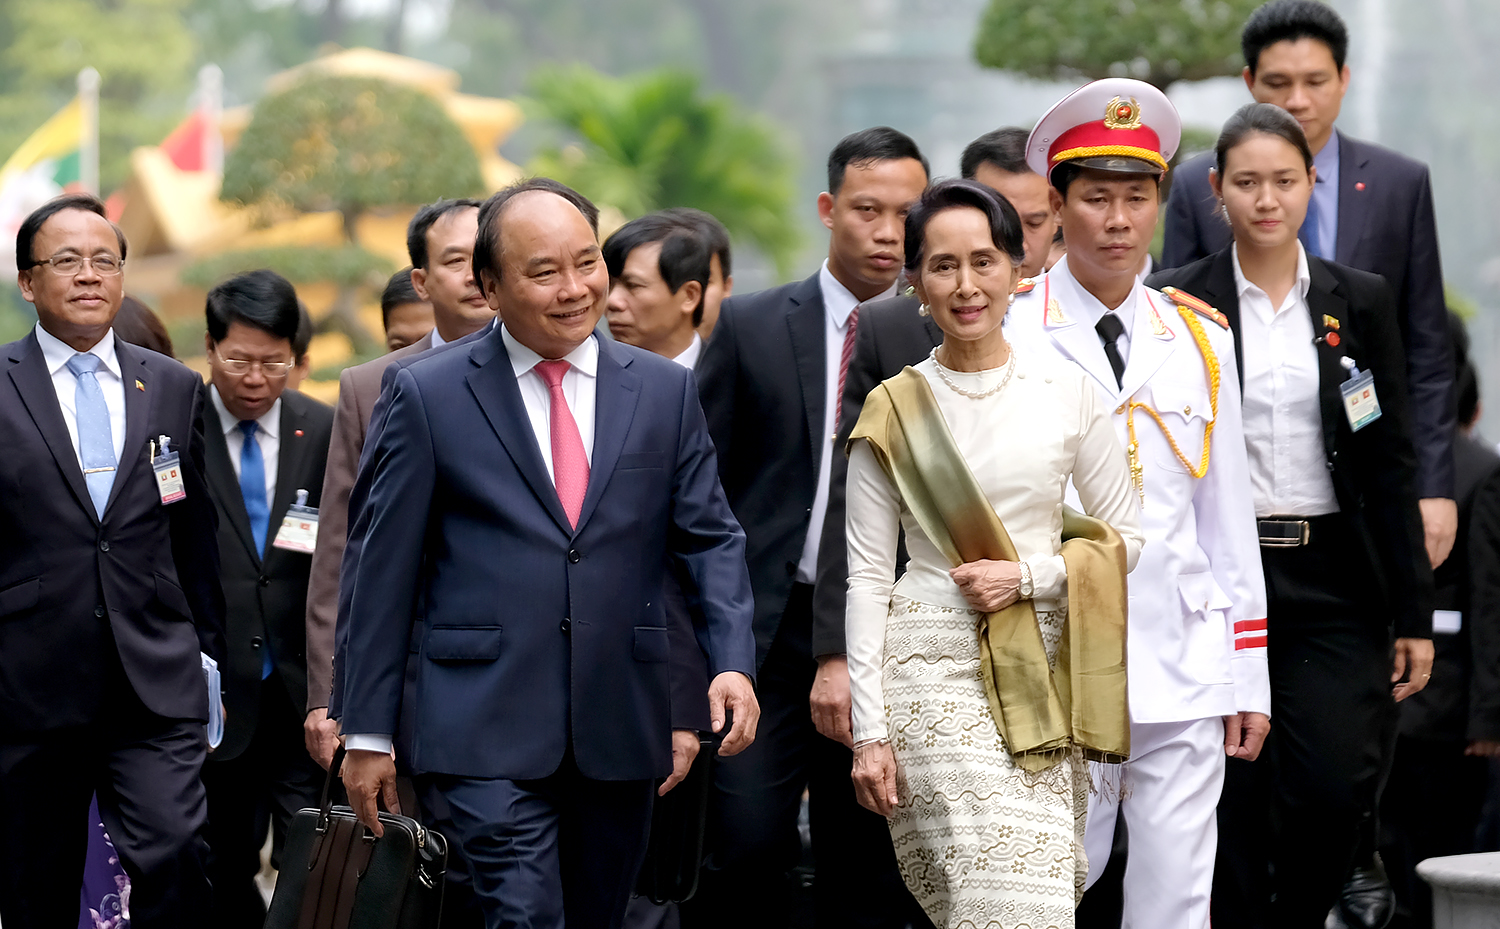 Cùng đi với bà Aung San Suu Kyi có: Ông Thant Sin Maung, Bộ trưởng Bộ Giao thông và Truyền thông; ông Kyaw Tin, Bộ trưởng Bộ Hợp tác quốc tế; ông Min Thu, Thứ trưởng Bộ Văn phòng Tổng thống; ông Sett Aung, Thứ trưởng Bộ Kế hoạch và Tài chính.